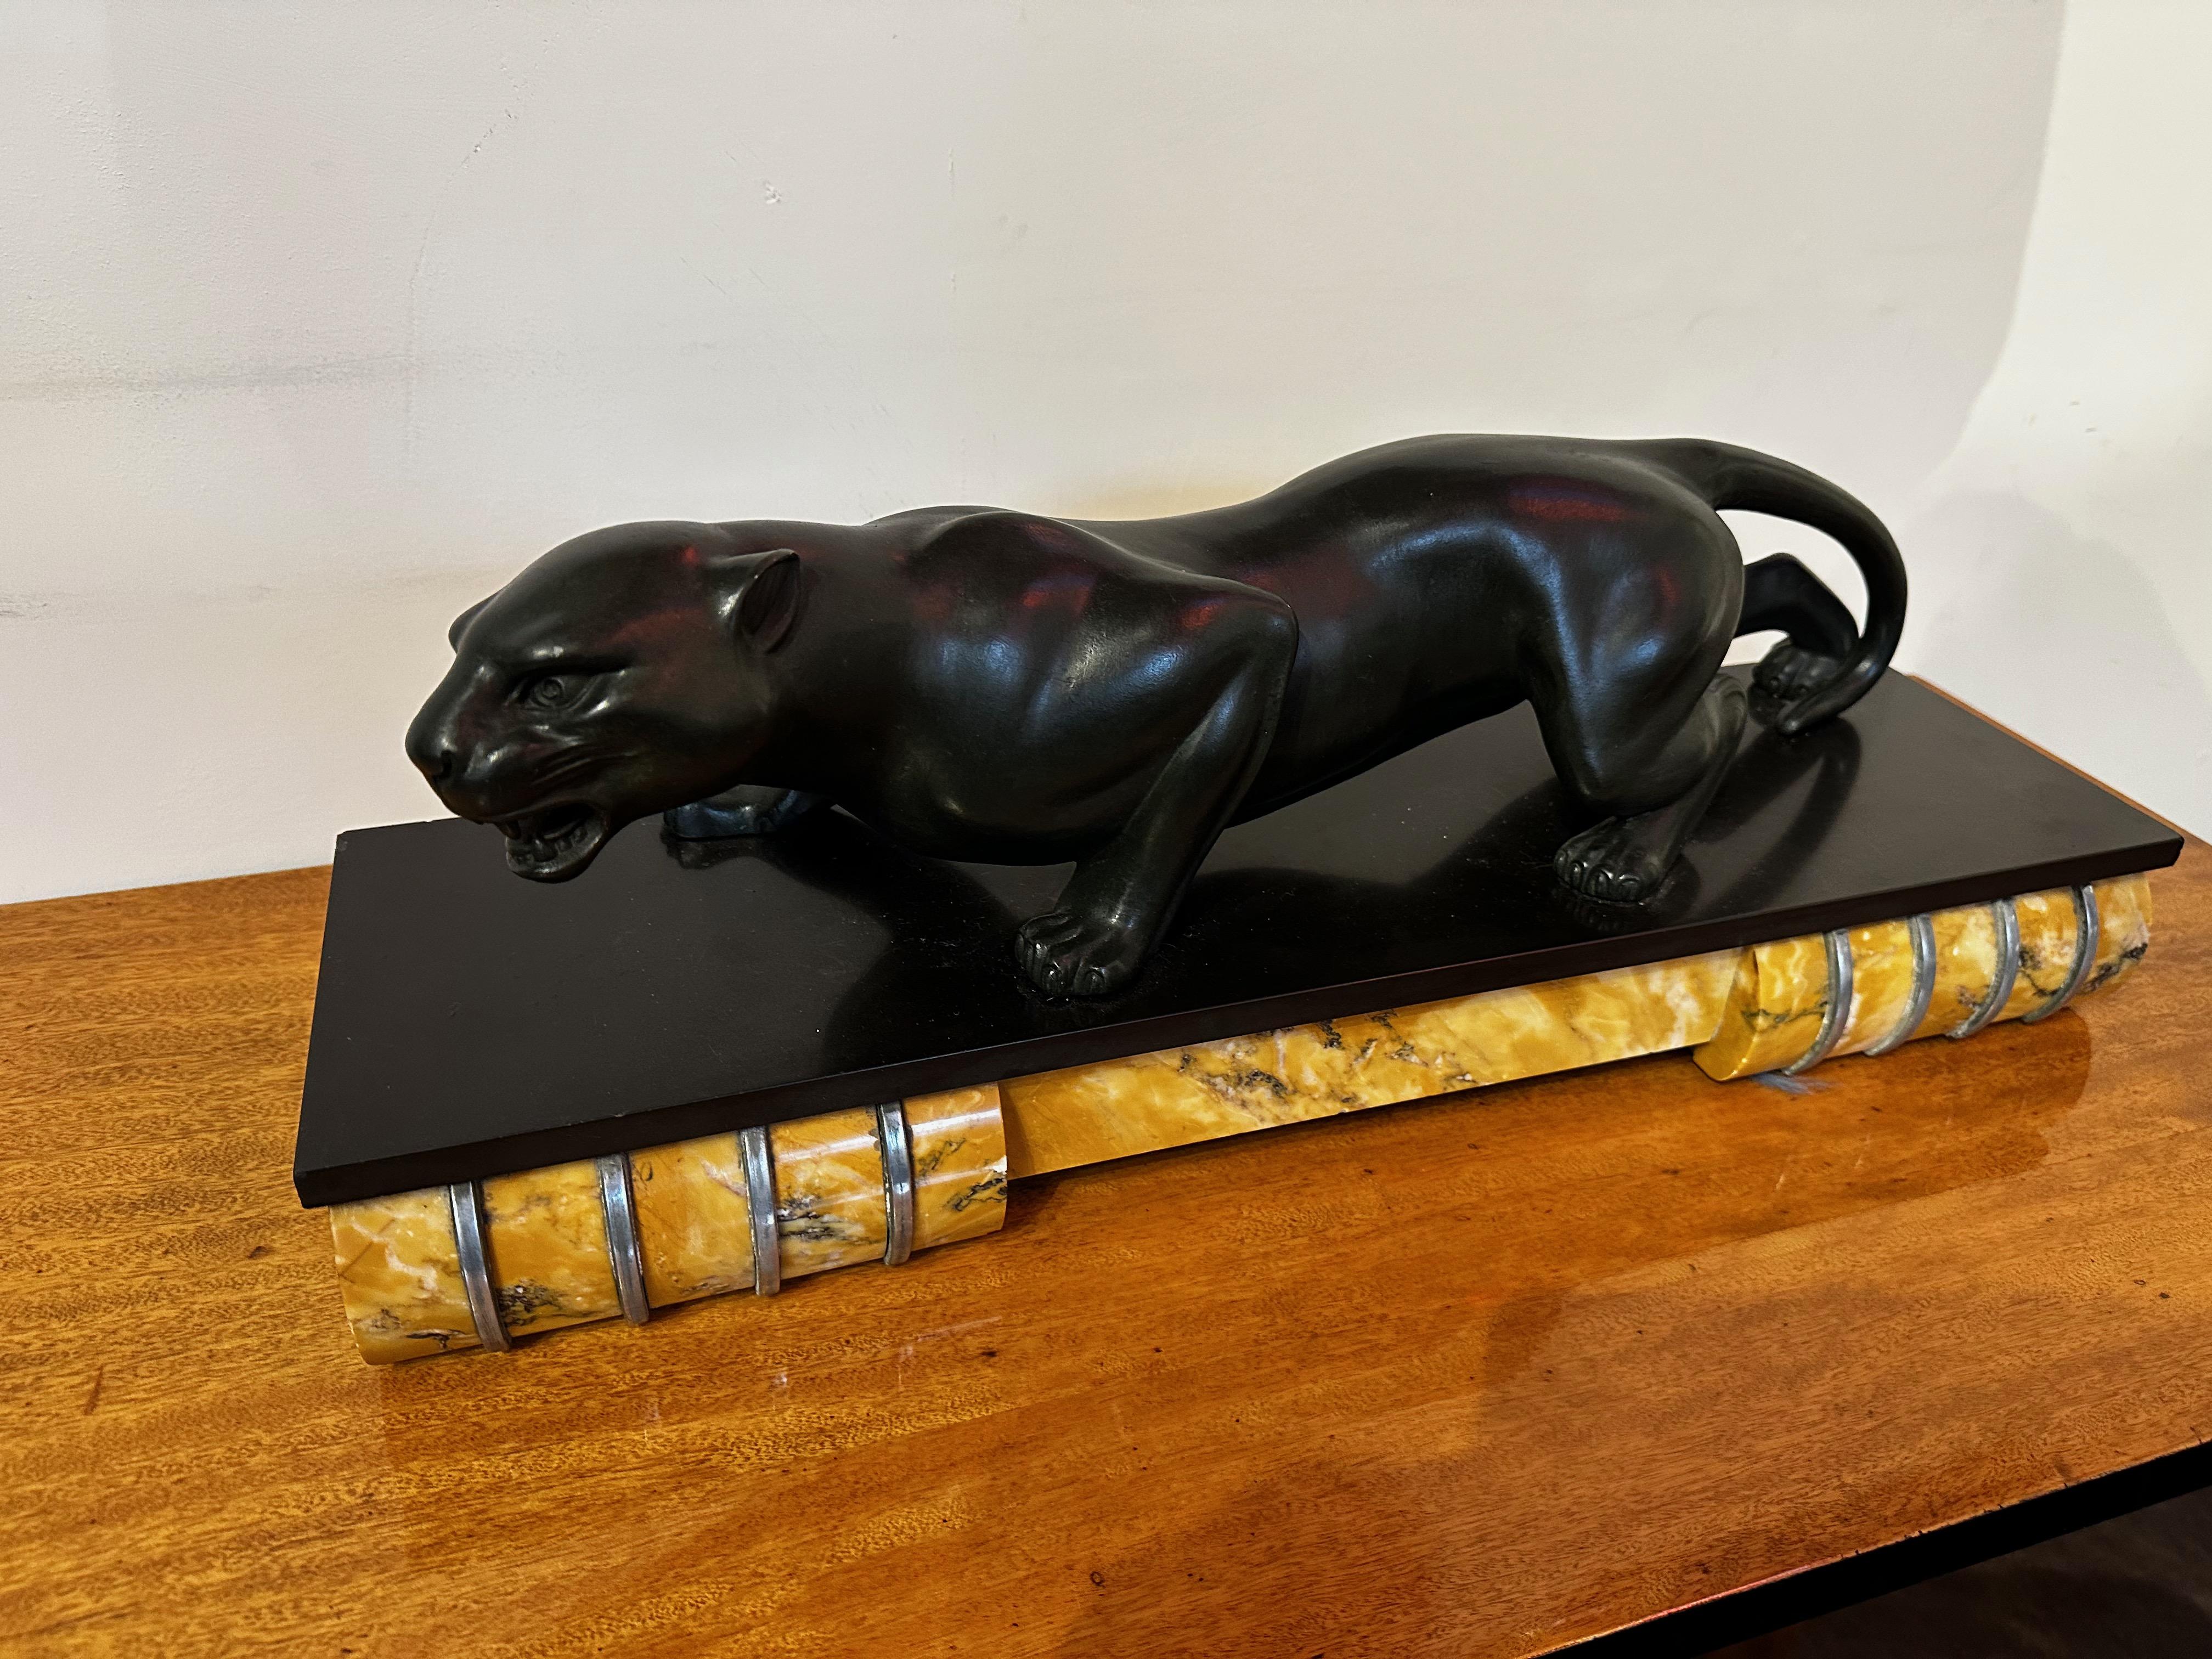 Die Black Panther Art Deco Skulptur wurde von Guy Debe entworfen und signiert. Der Körper des Panthers ist aus schwarzem Metall patiniert und besteht aus einer Metallmischung, die Regul genannt wird und auf Bronze basiert. Der skulpturale Panther,